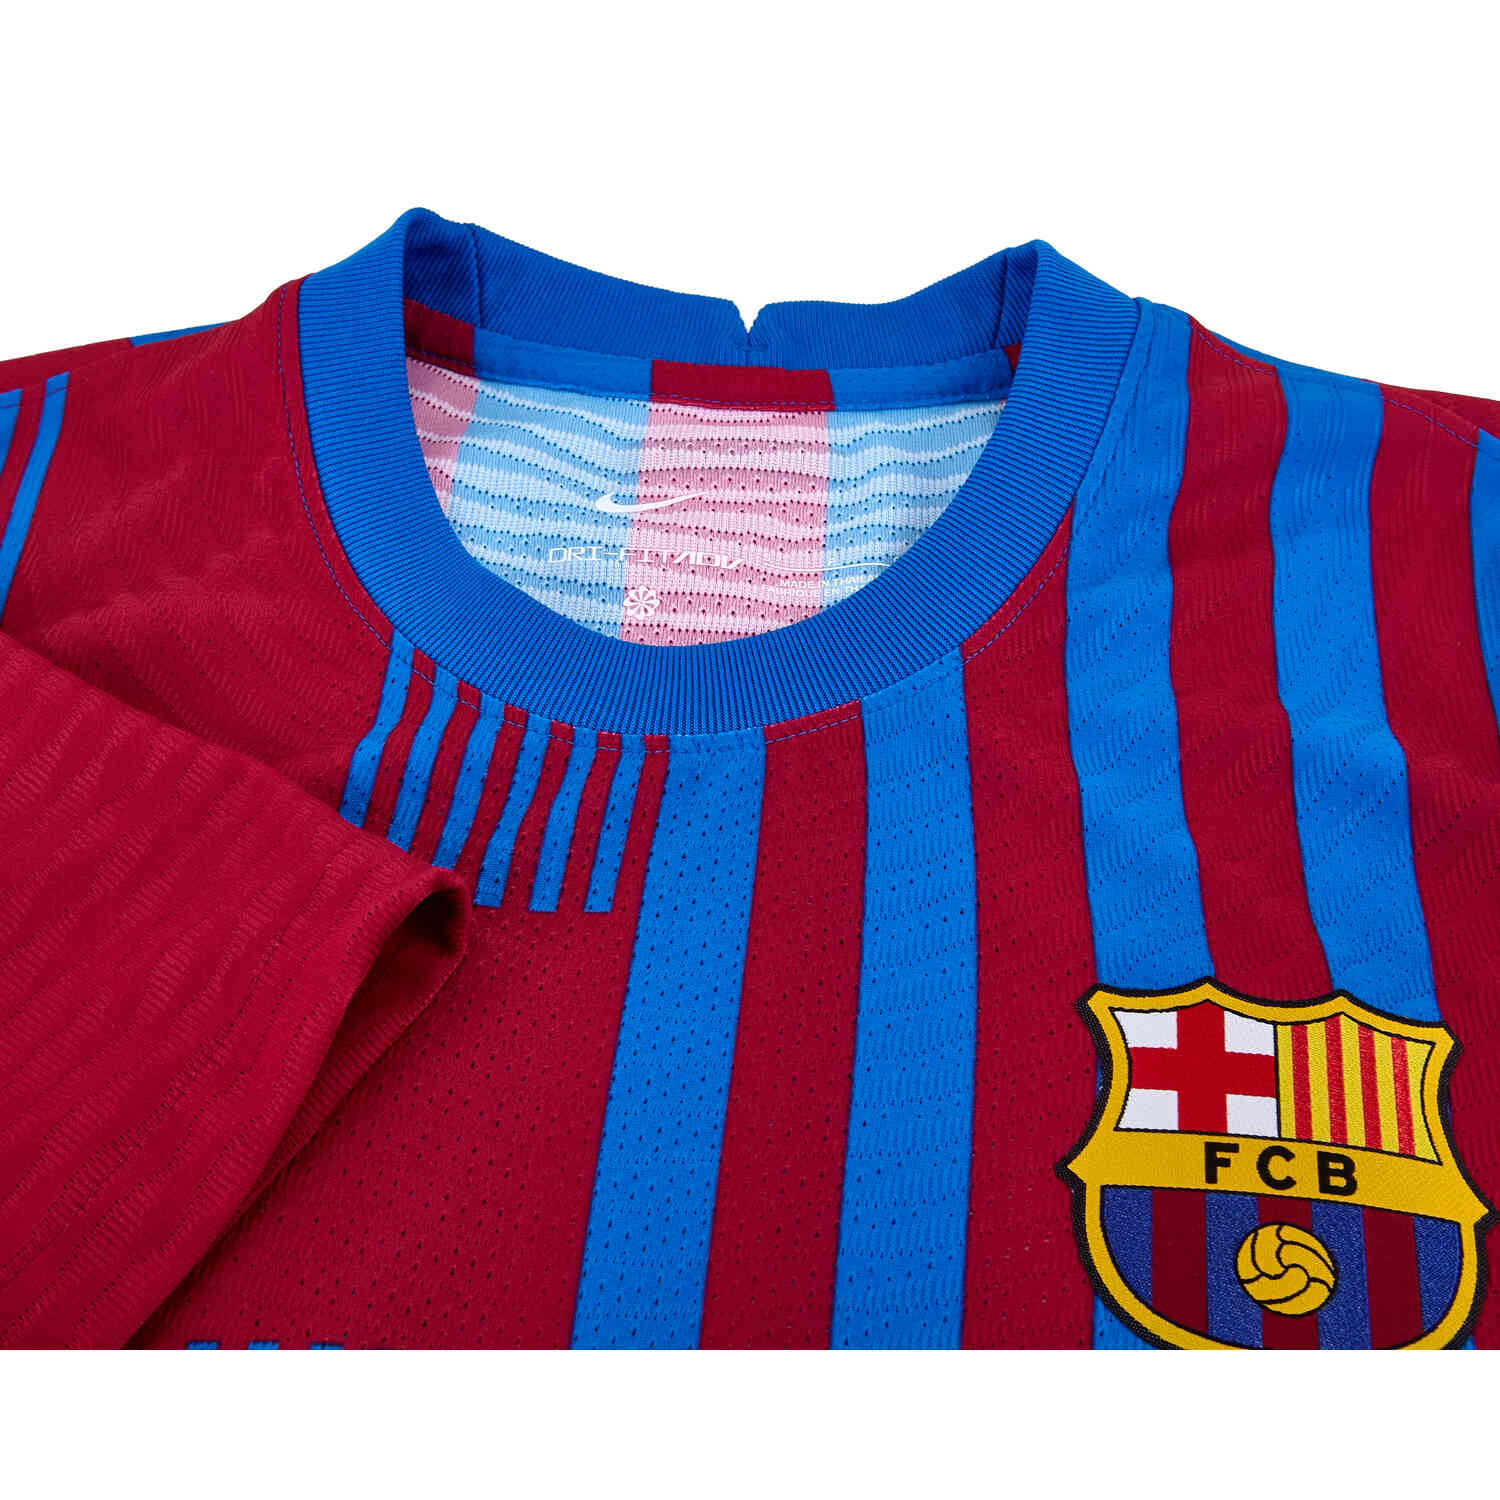 spannend Altaar onbekend 2021/22 Nike Barcelona Home Match Jersey - SoccerPro